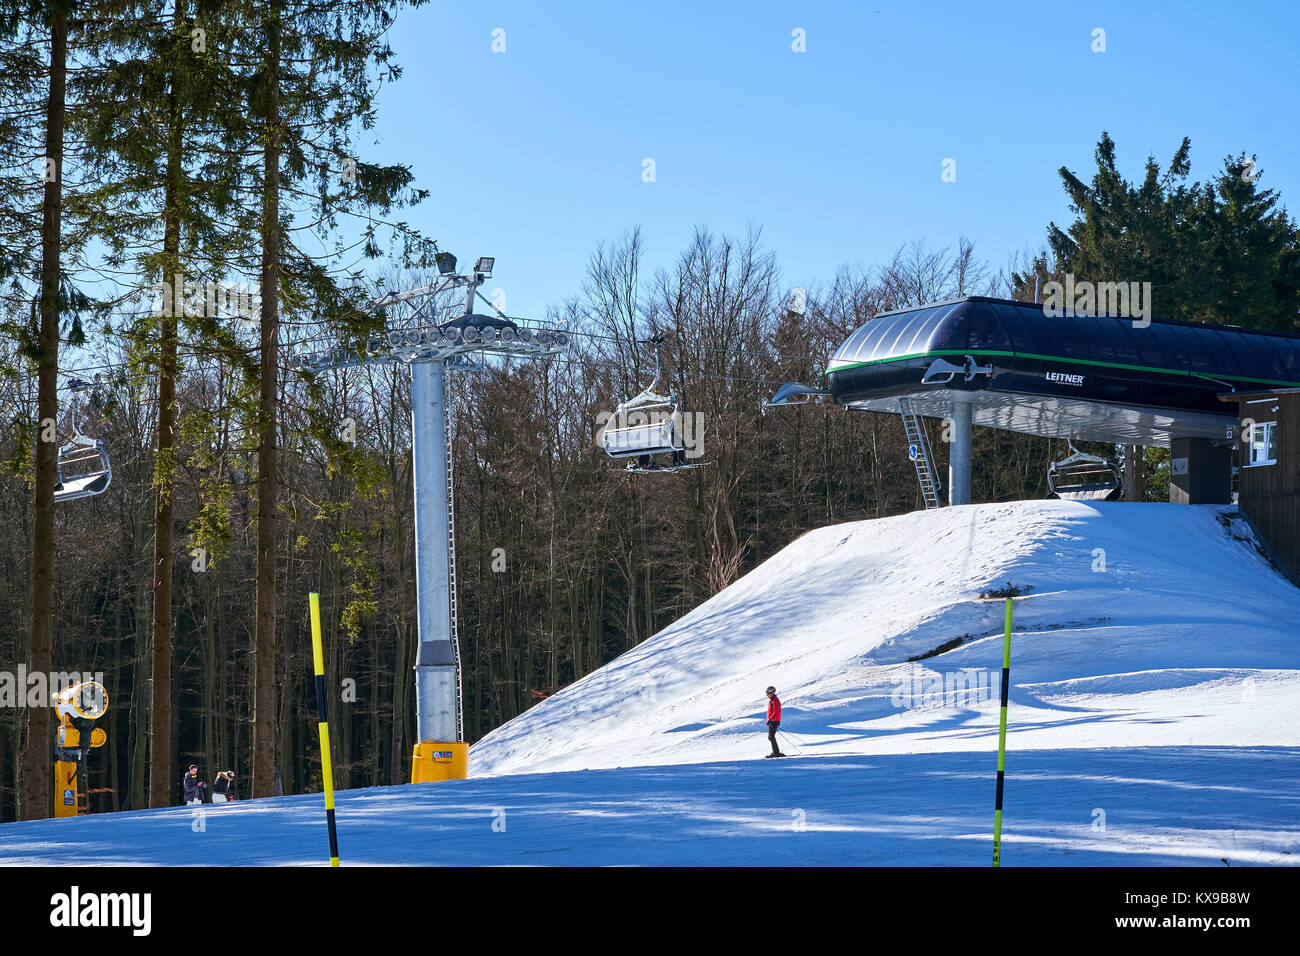 WINTERBERG, Deutschland - 15. FEBRUAR 2017: Sessellift nur eines Berges zu landen im Skikarussell Winterberg Stockfoto